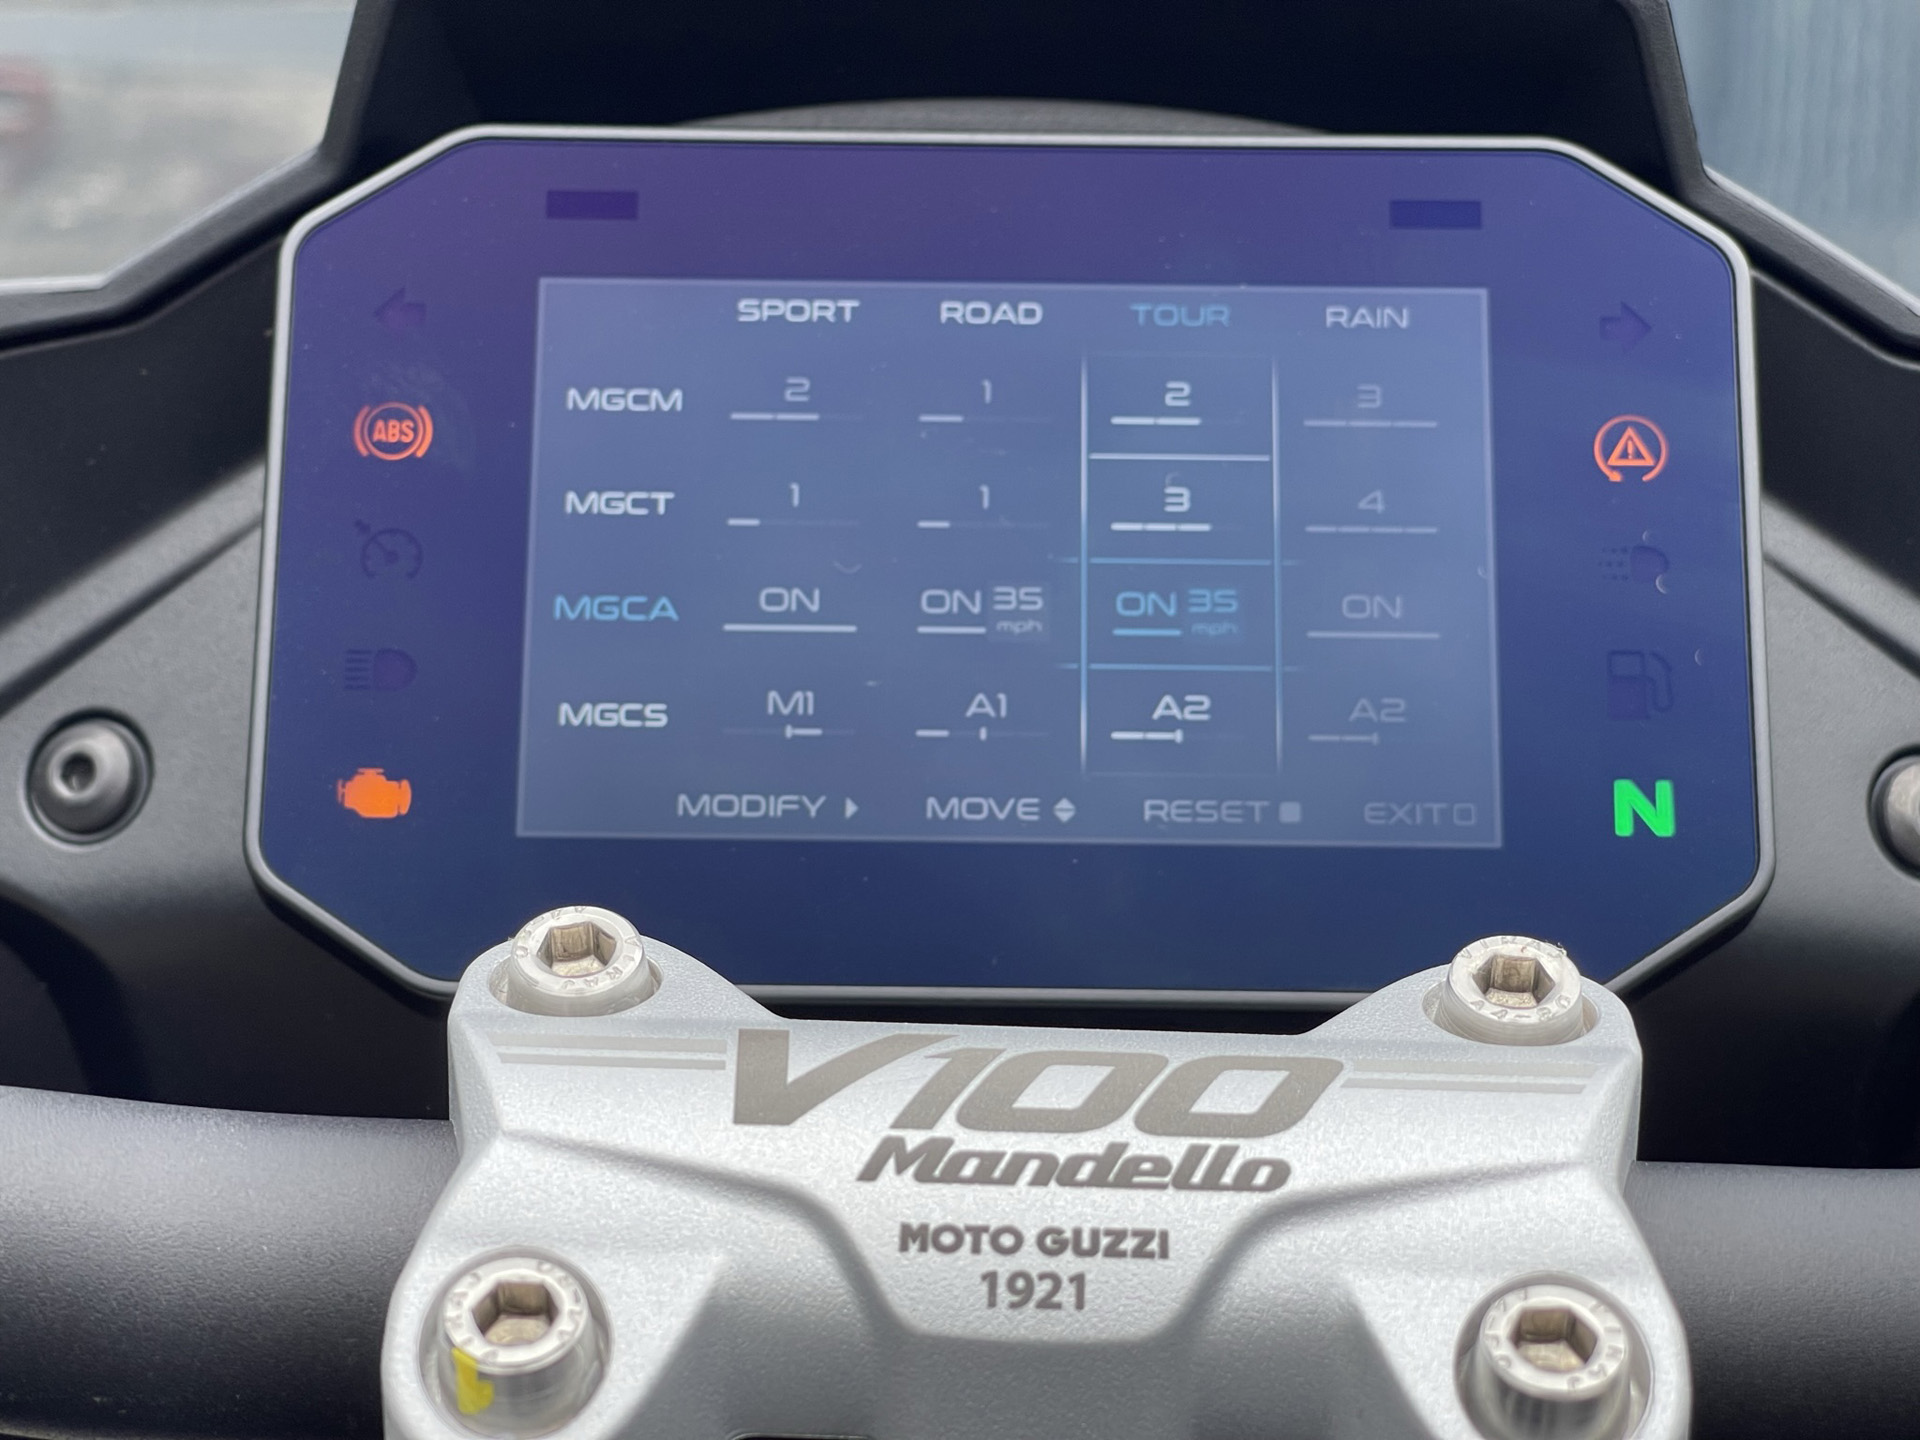 Rider mode screen on the Moto Guzzi V100 Mandello S